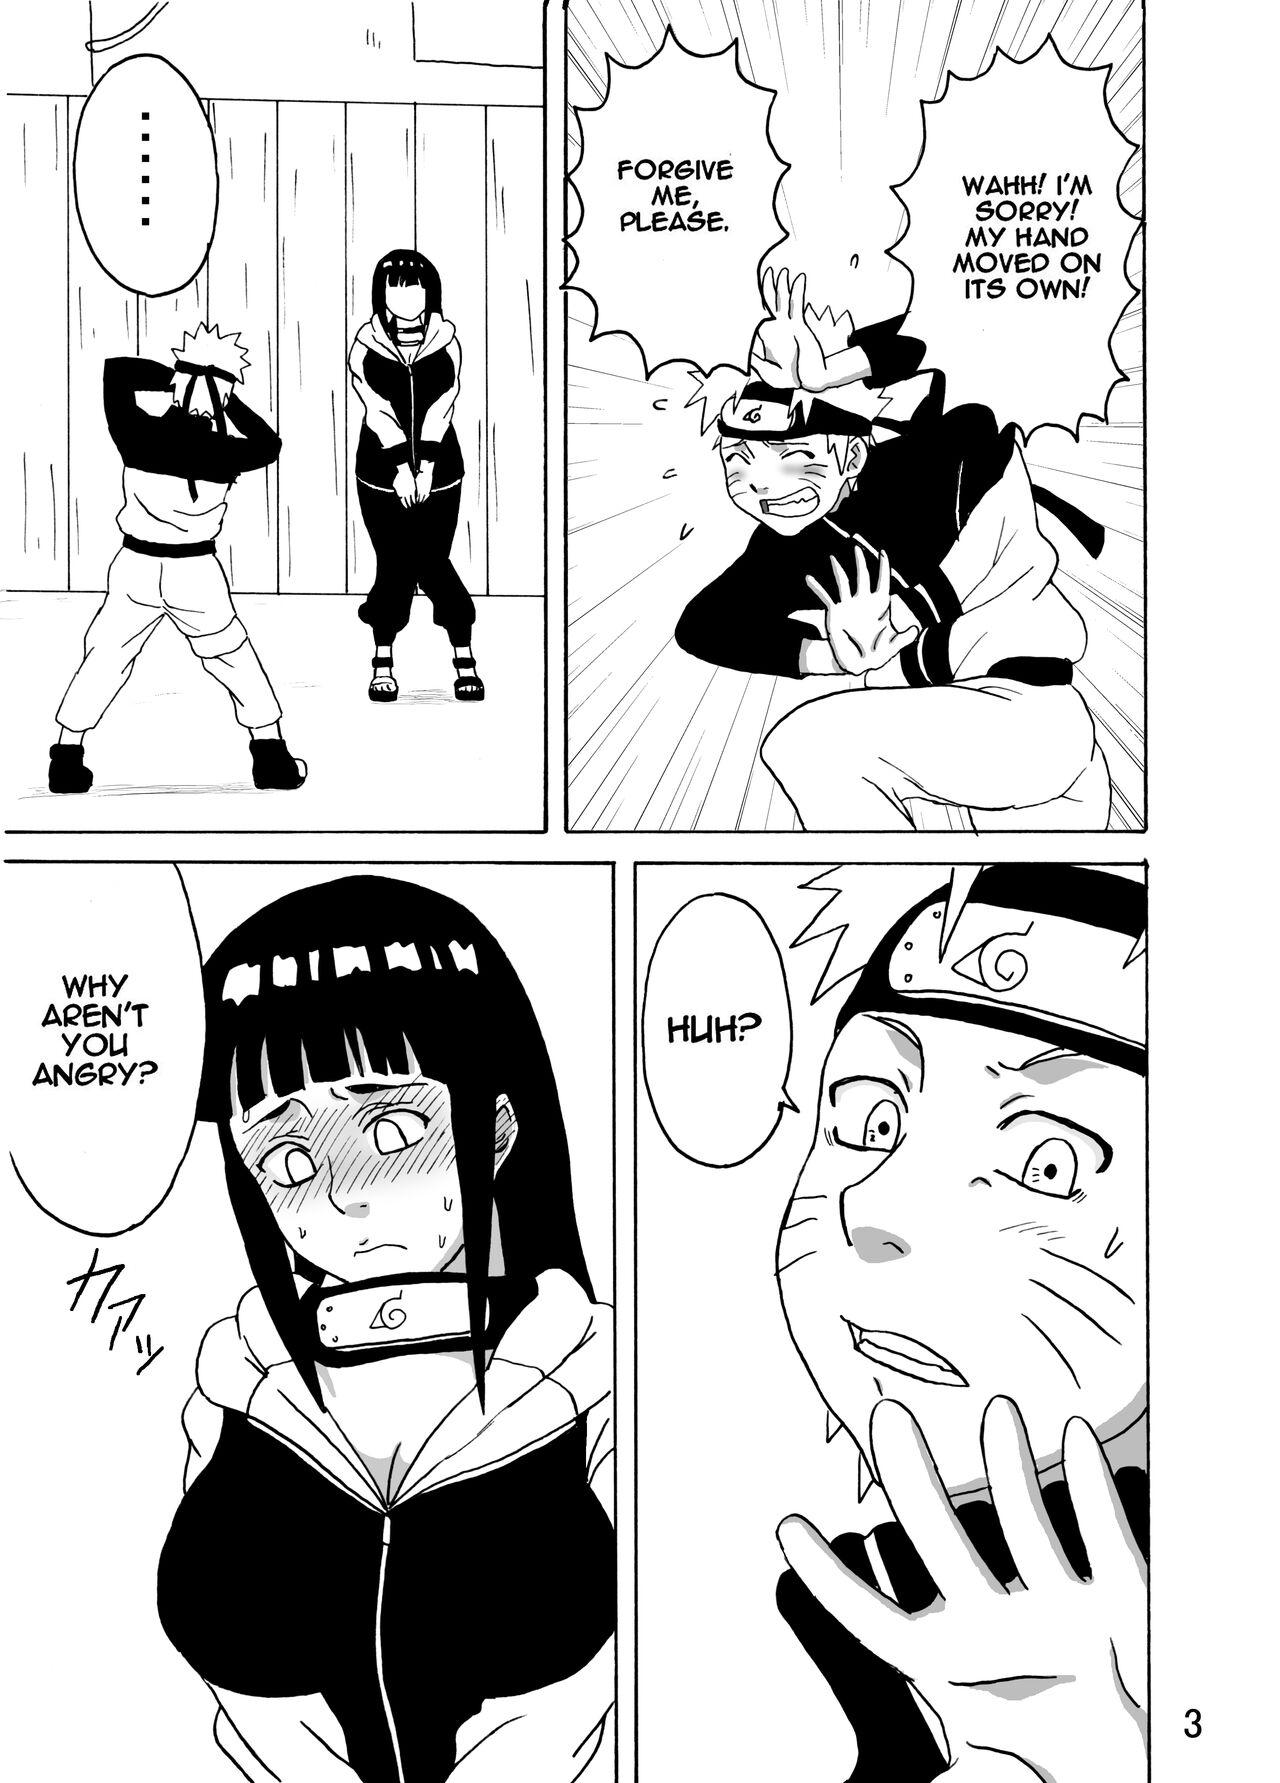 Double Penetration Hinata Ganbaru! | Hinata Fight! - Naruto Tinytits - Page 4